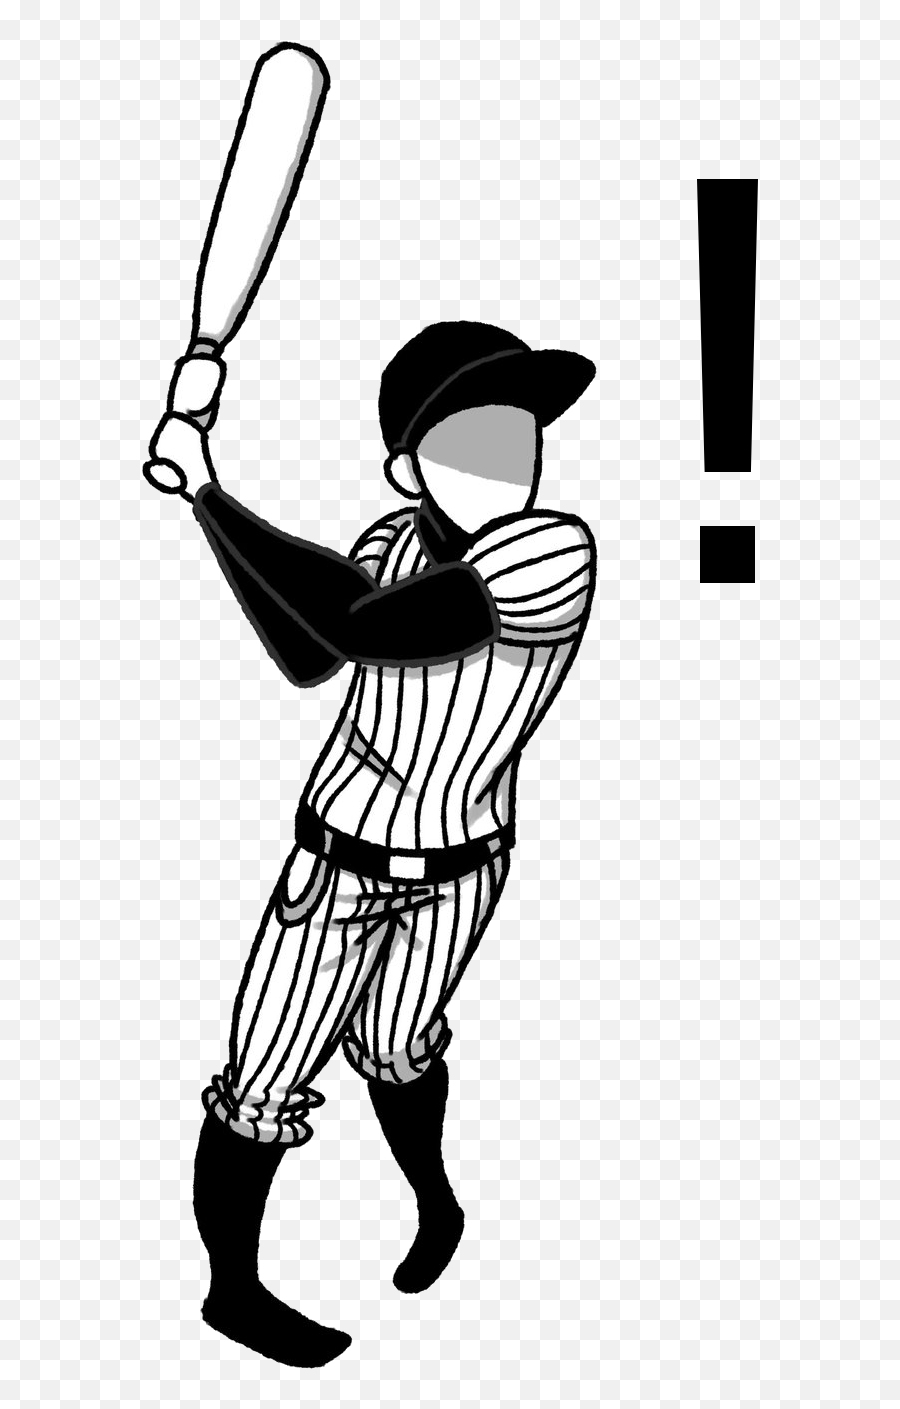 Ll Hit You Home - Composite Baseball Bat Emoji,Take A Bow Emoji